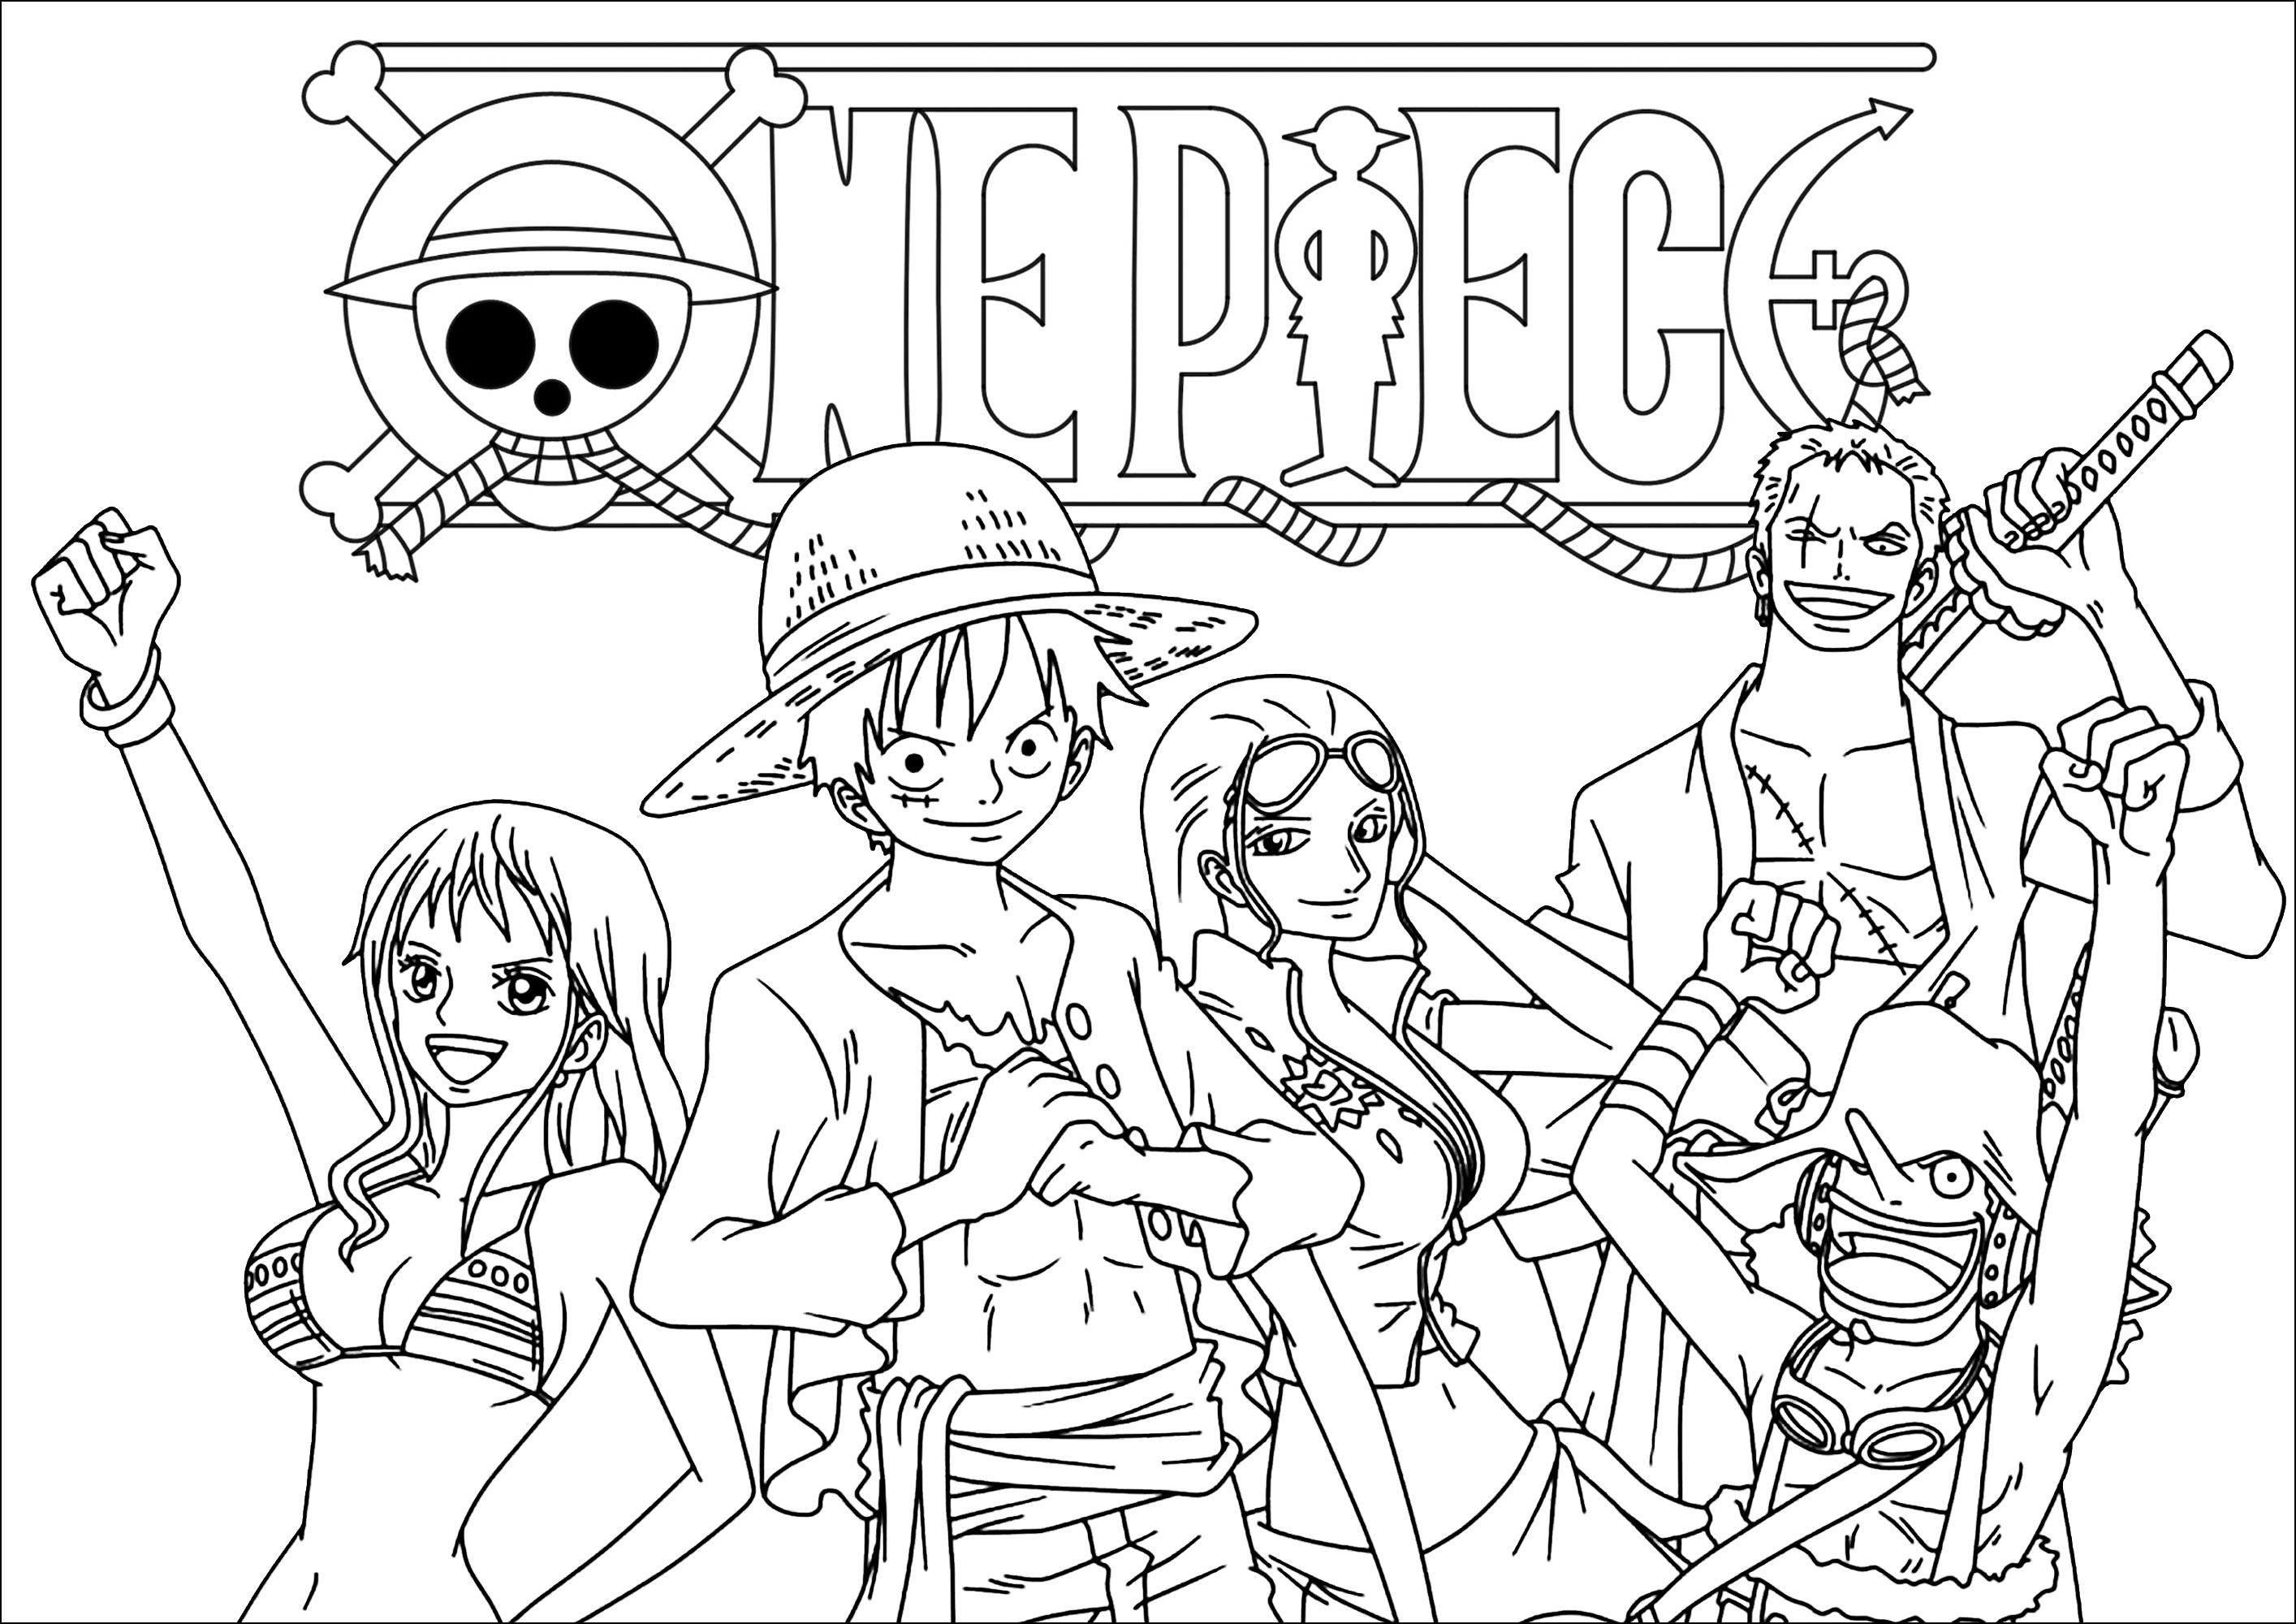 Personajes y logotipo de One Piece. Colorea a Monkey D. Luffy, Roronoa Zoro, Nami y otros personajes.